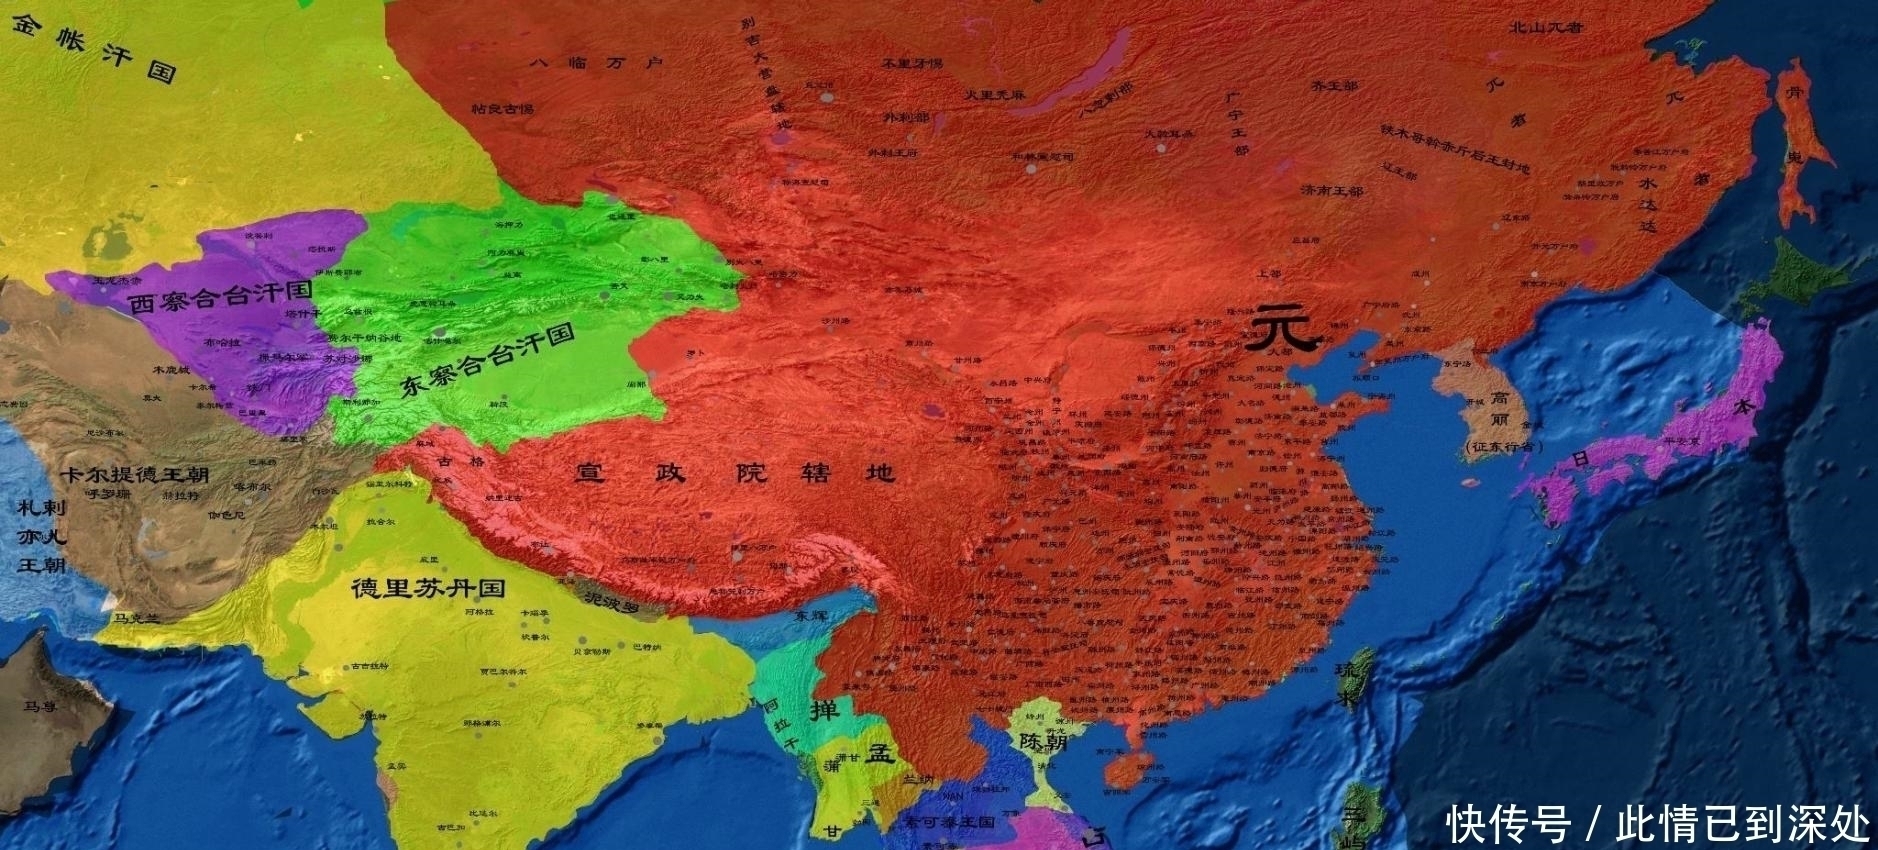 毫无疑问,能征善战的蒙古人建立的元朝是中国历史上版图面积最辽阔的